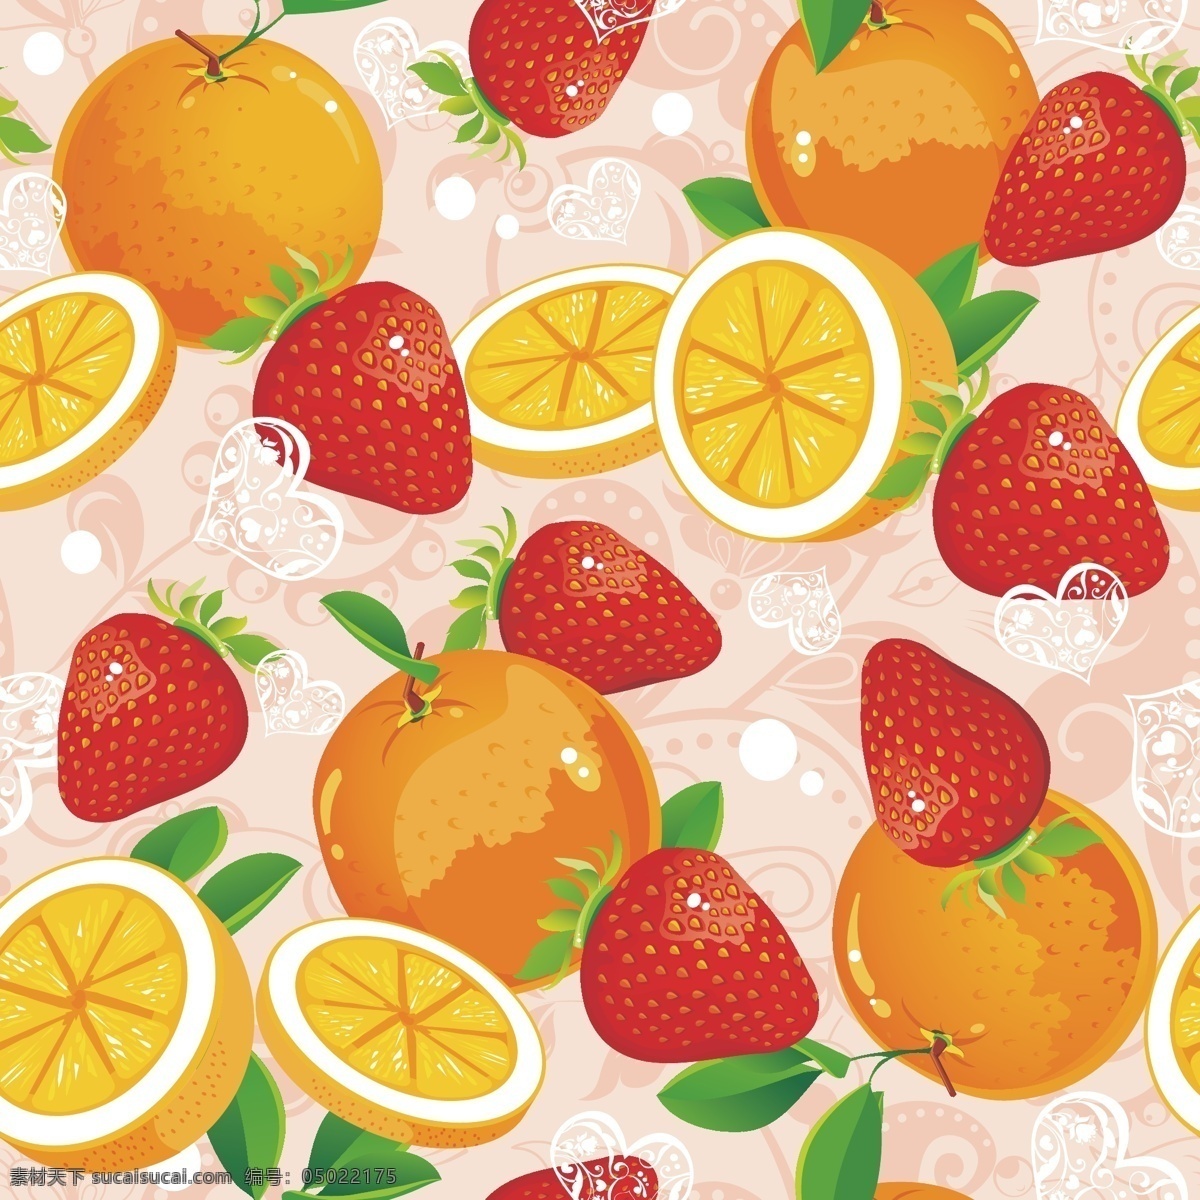 水果 底纹 草莓 桔子 苹果 矢量图 花纹花边